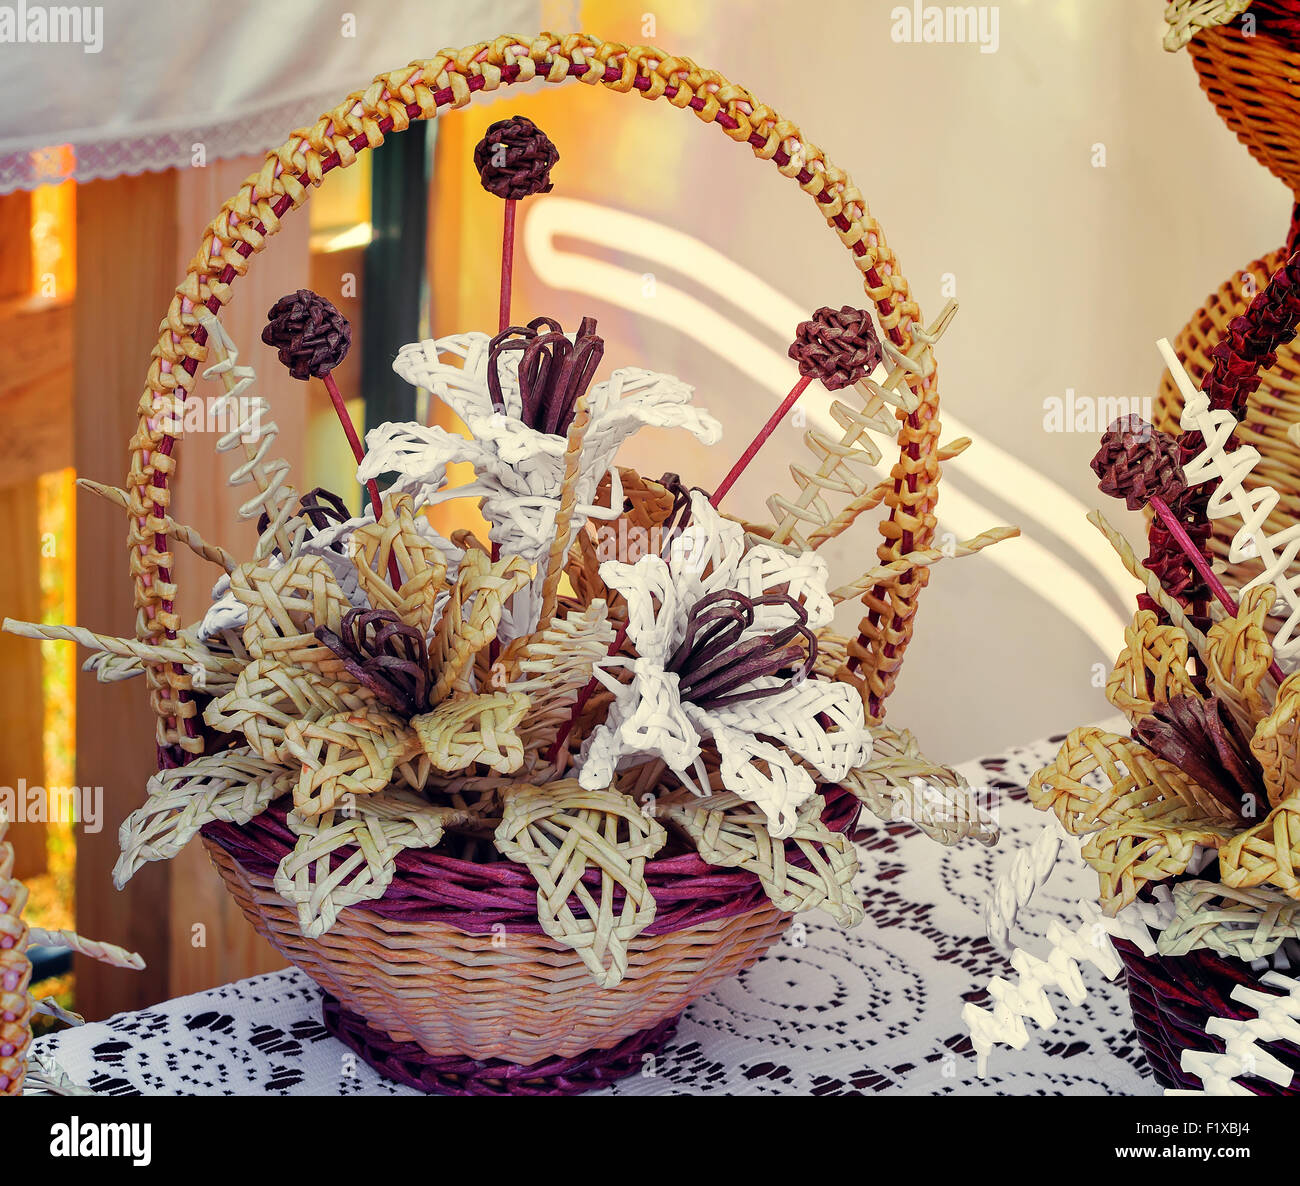 Paille tissée de belles fleurs dans un panier sur une table couverte d'une nappe en dentelle. Ce produits à vendre à la foire. Banque D'Images